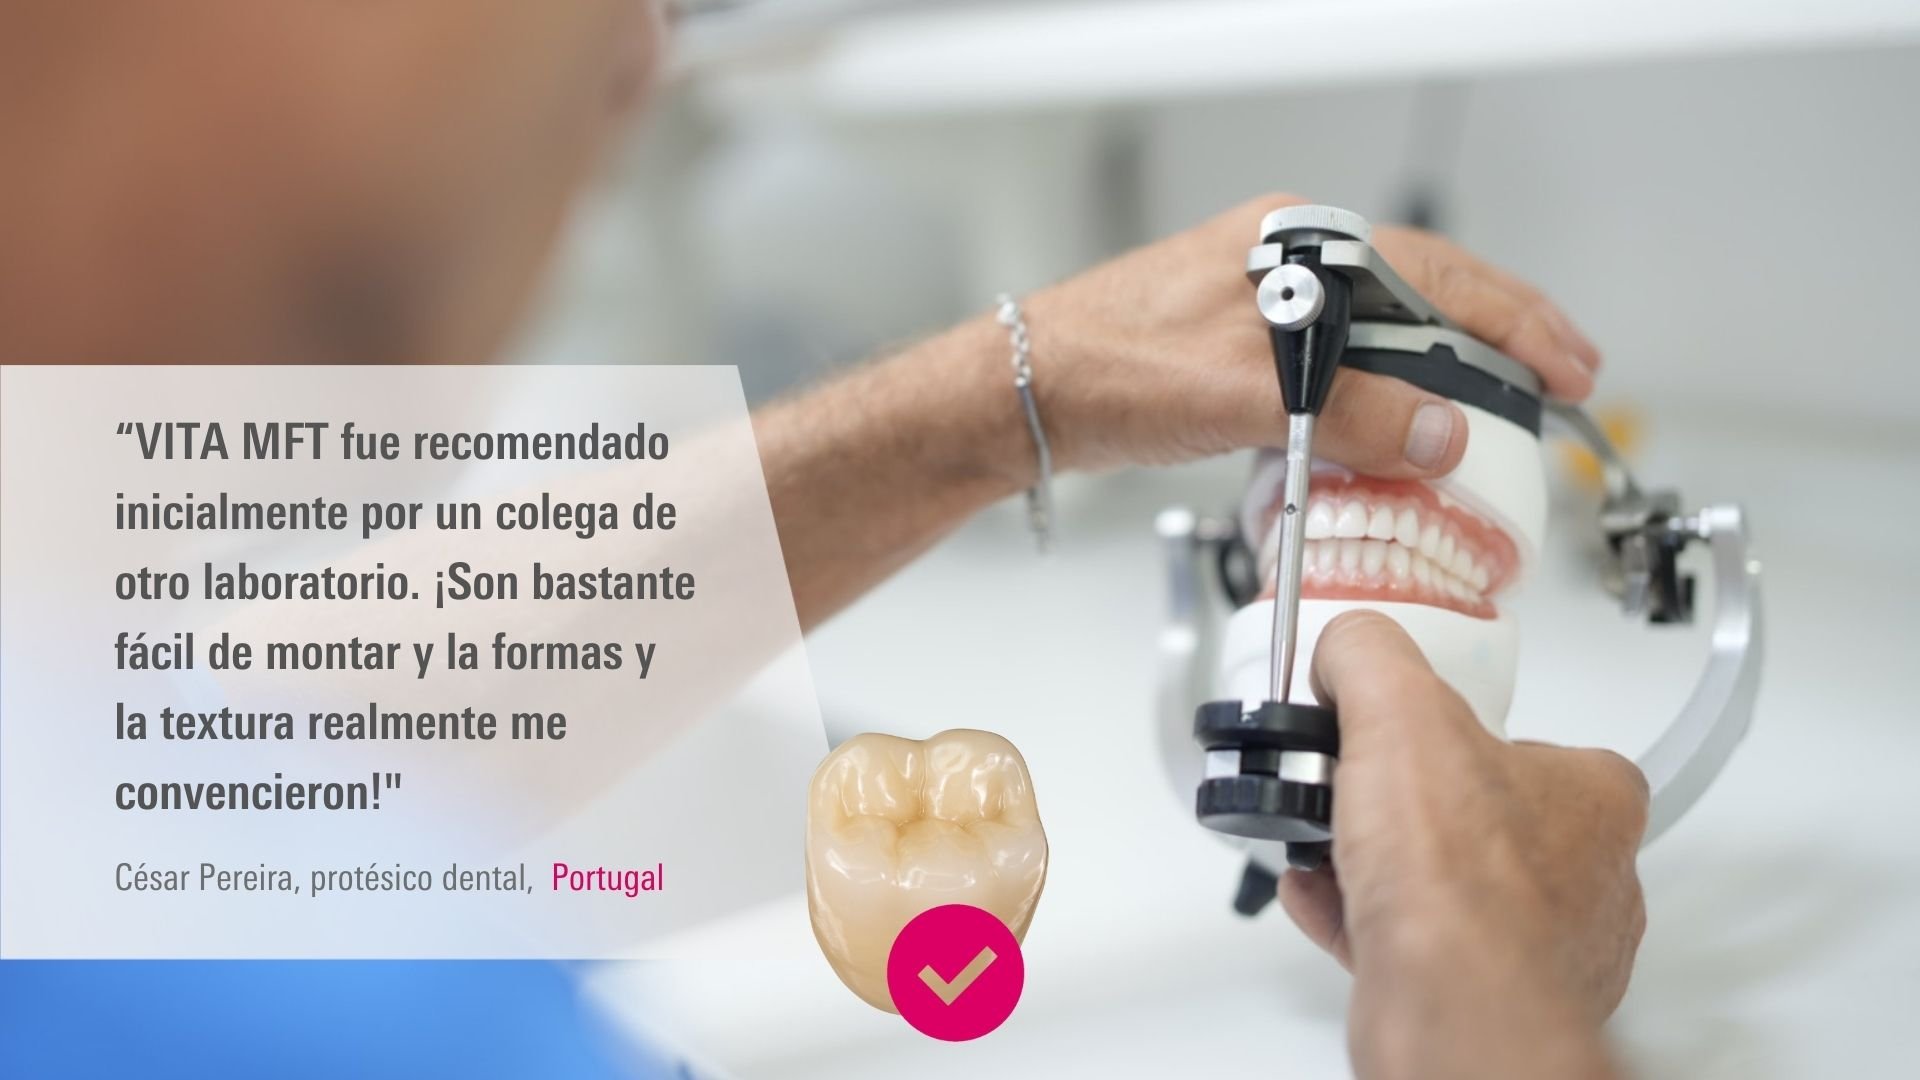 VITA MFT. César Pereira, protésico dental, Portugal